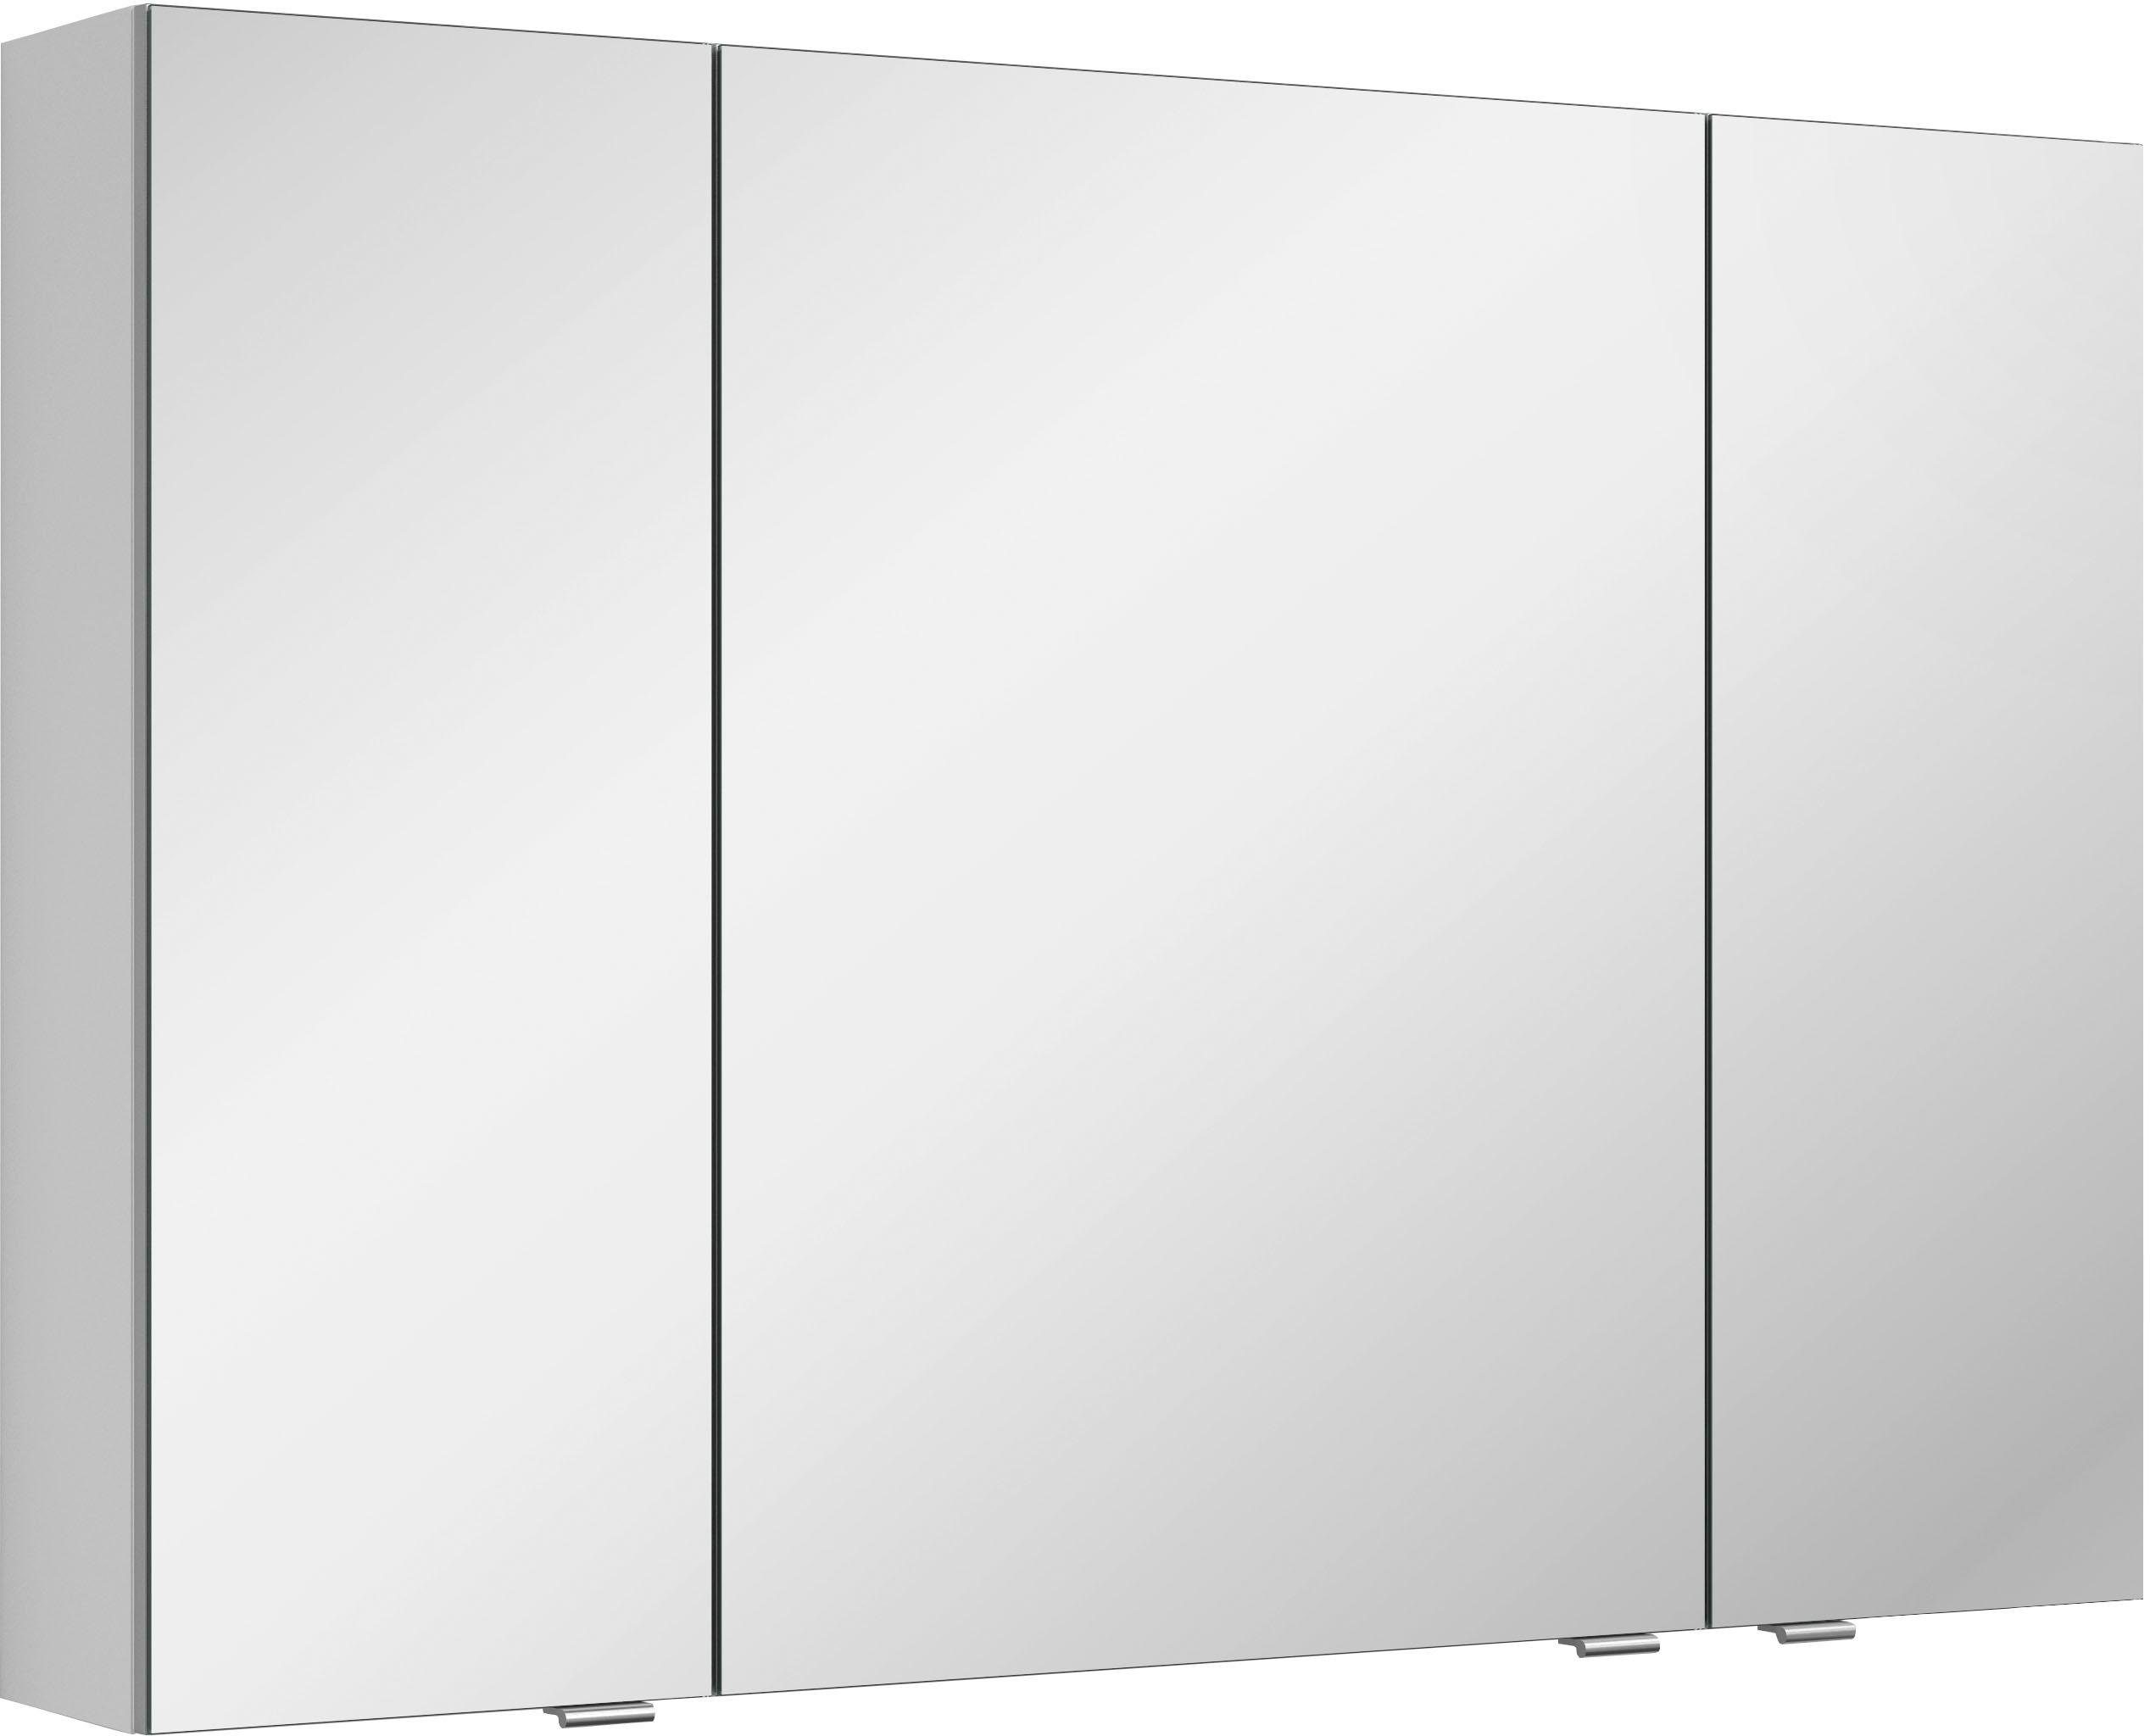 MARLIN Spiegelschrank 3980 mit doppelseitig verspiegelten Türen,  vormontiert, Maße (B/T/H): 100/17,6/68,2 cm